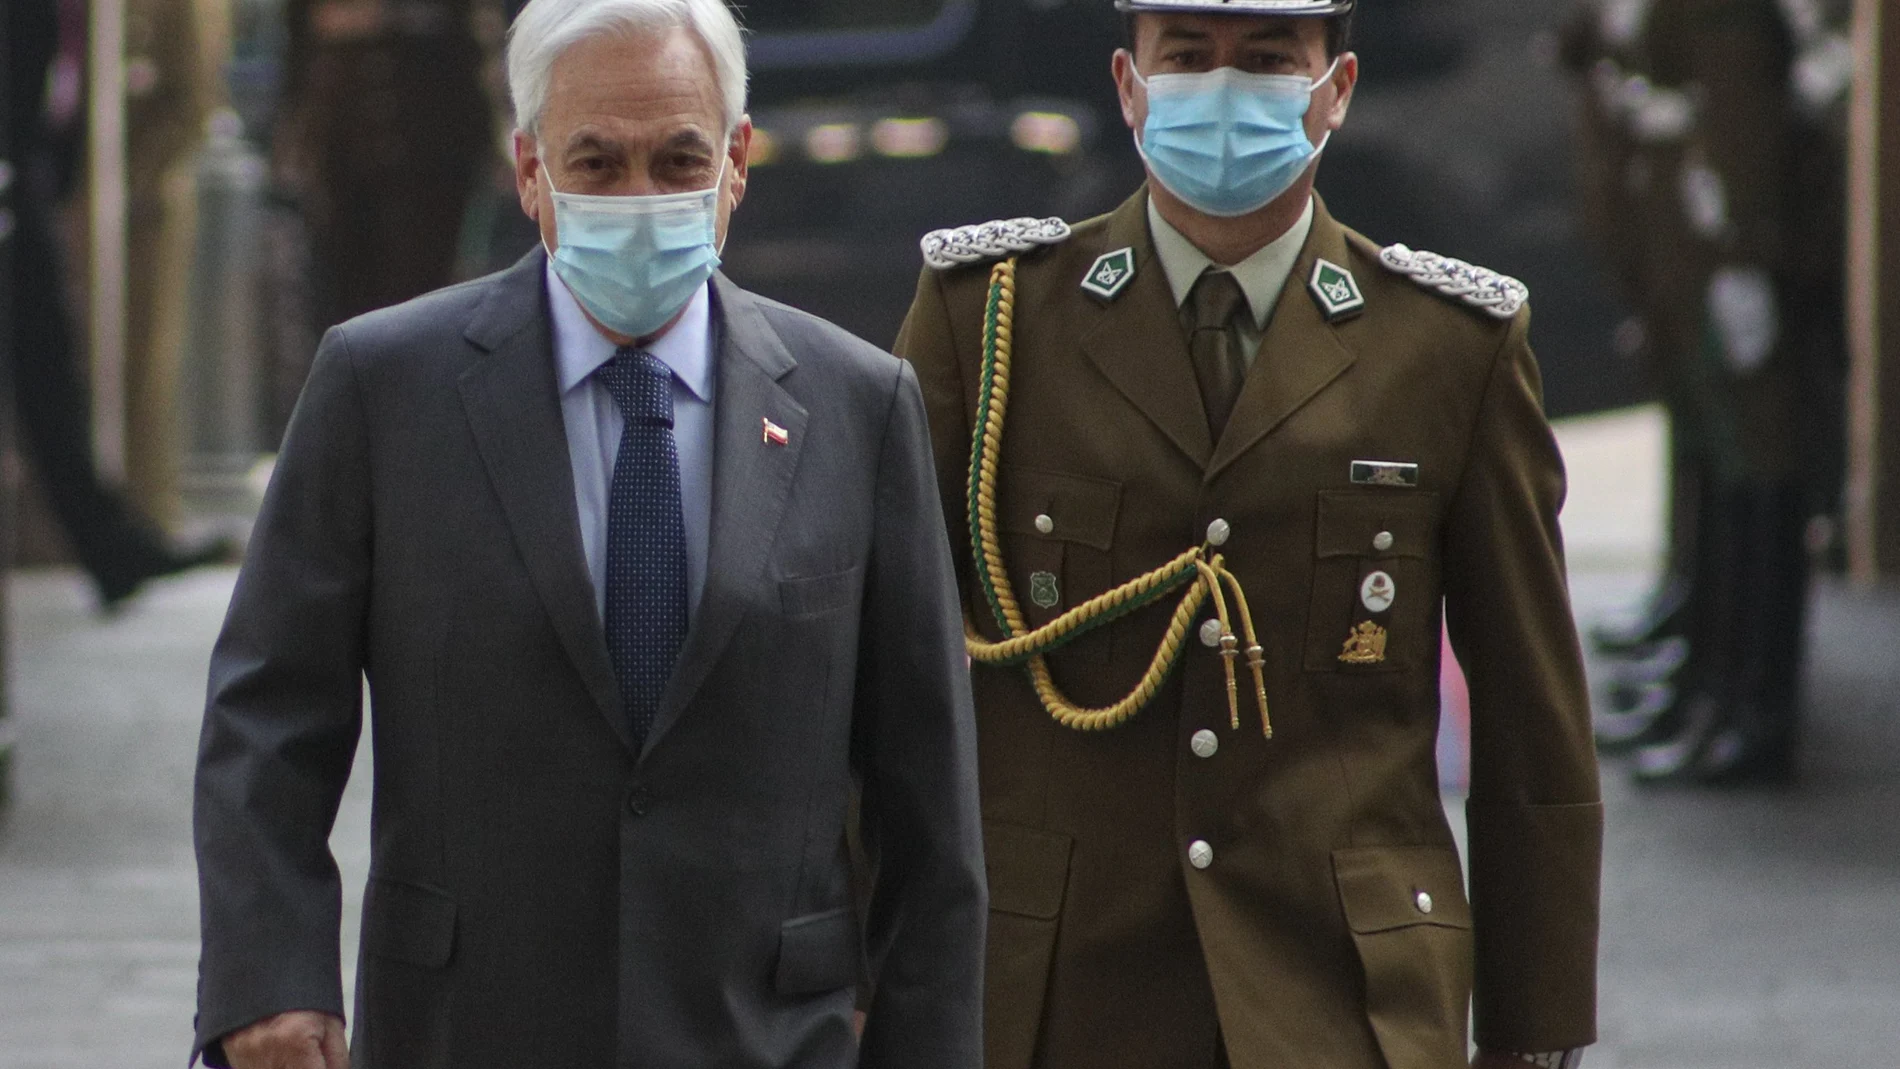 El presidente, Sebastián Piñera, llega al palacio de La Moneda después de las macrojornadas electorales del fin de semana en Chile